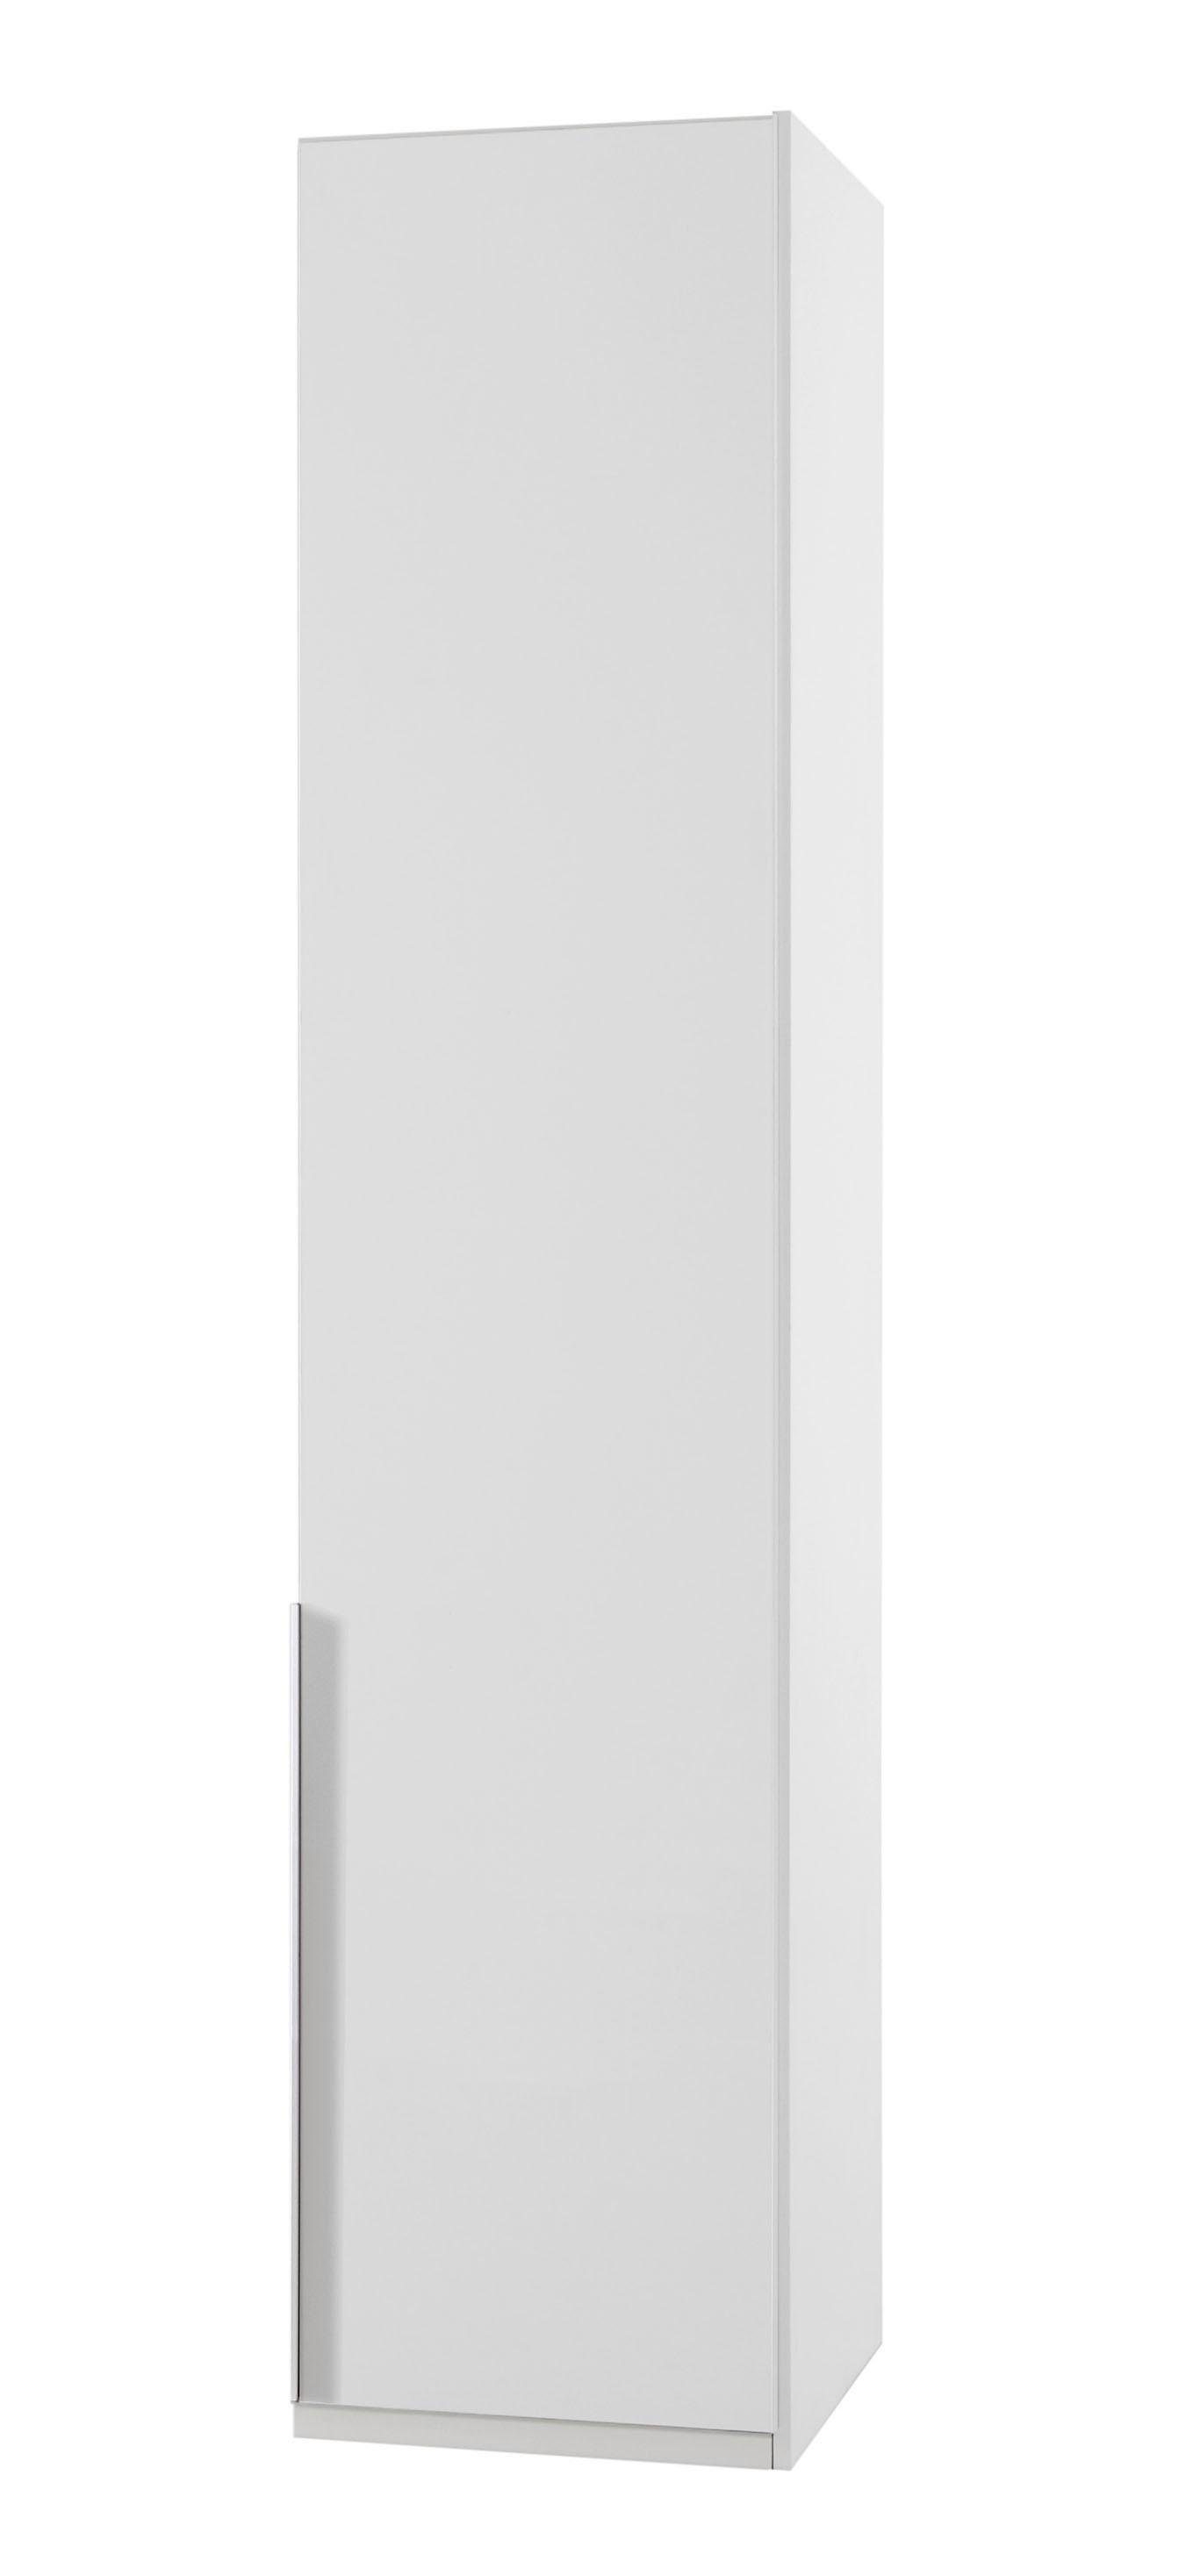 Wimex Kleiderschrank New York 208 oder 236cm hoch weiß | Kleiderschränke